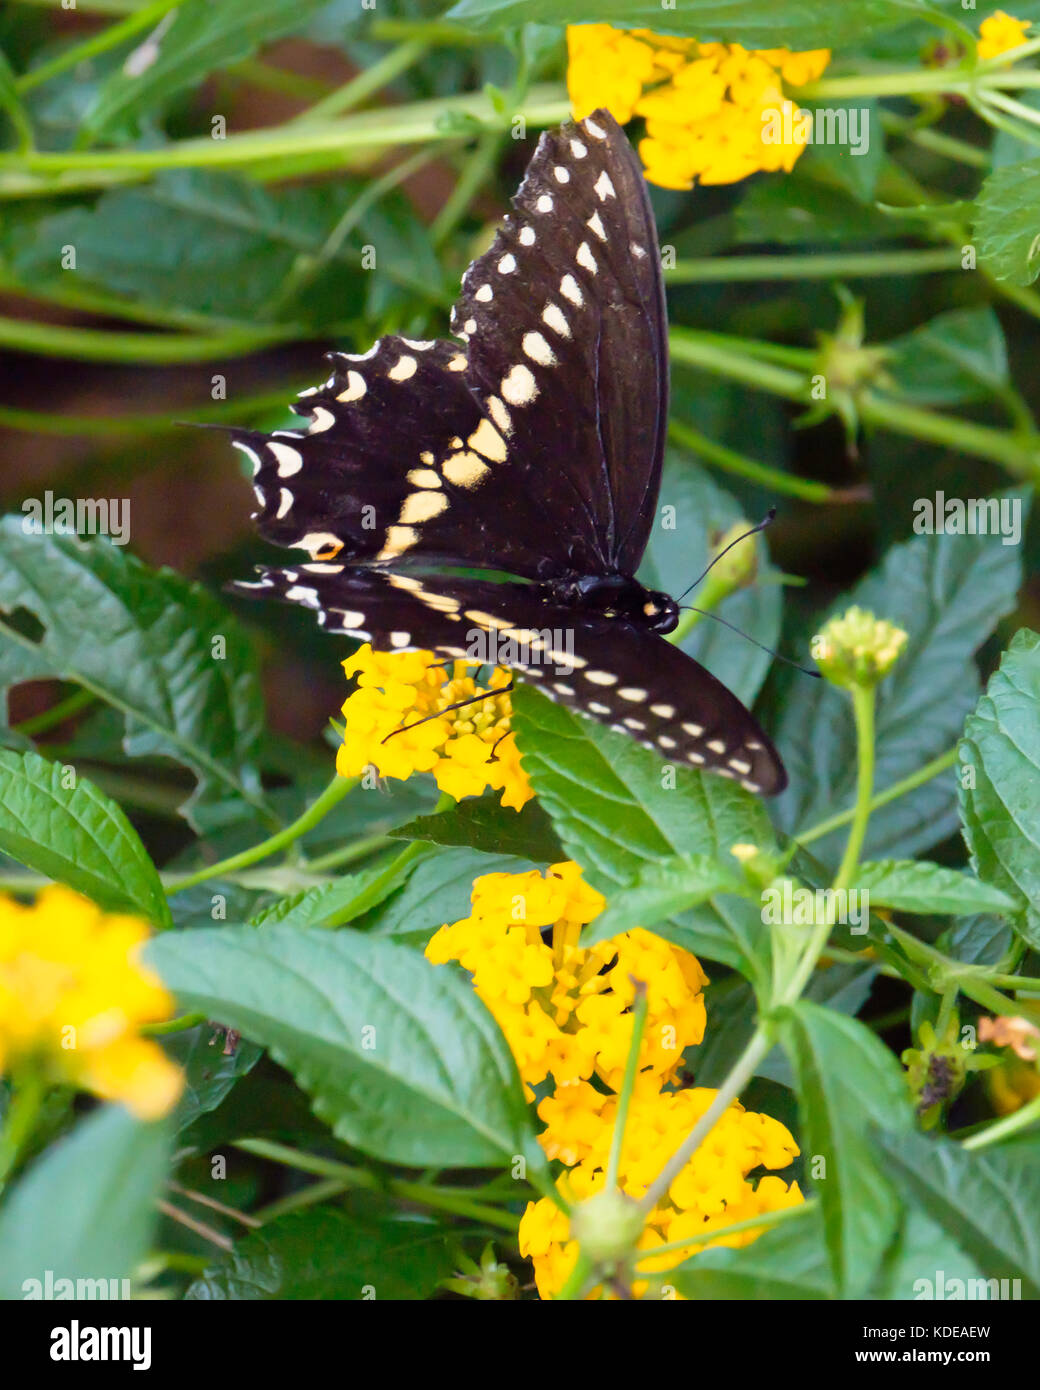 Nero a coda di rondine, butterfly Papilio polyxenes, alimentando su giallo Lantana camara. Lo stato farfalla di Oklahoma e New Jersey. Oklahoma, Stati Uniti d'America. Foto Stock